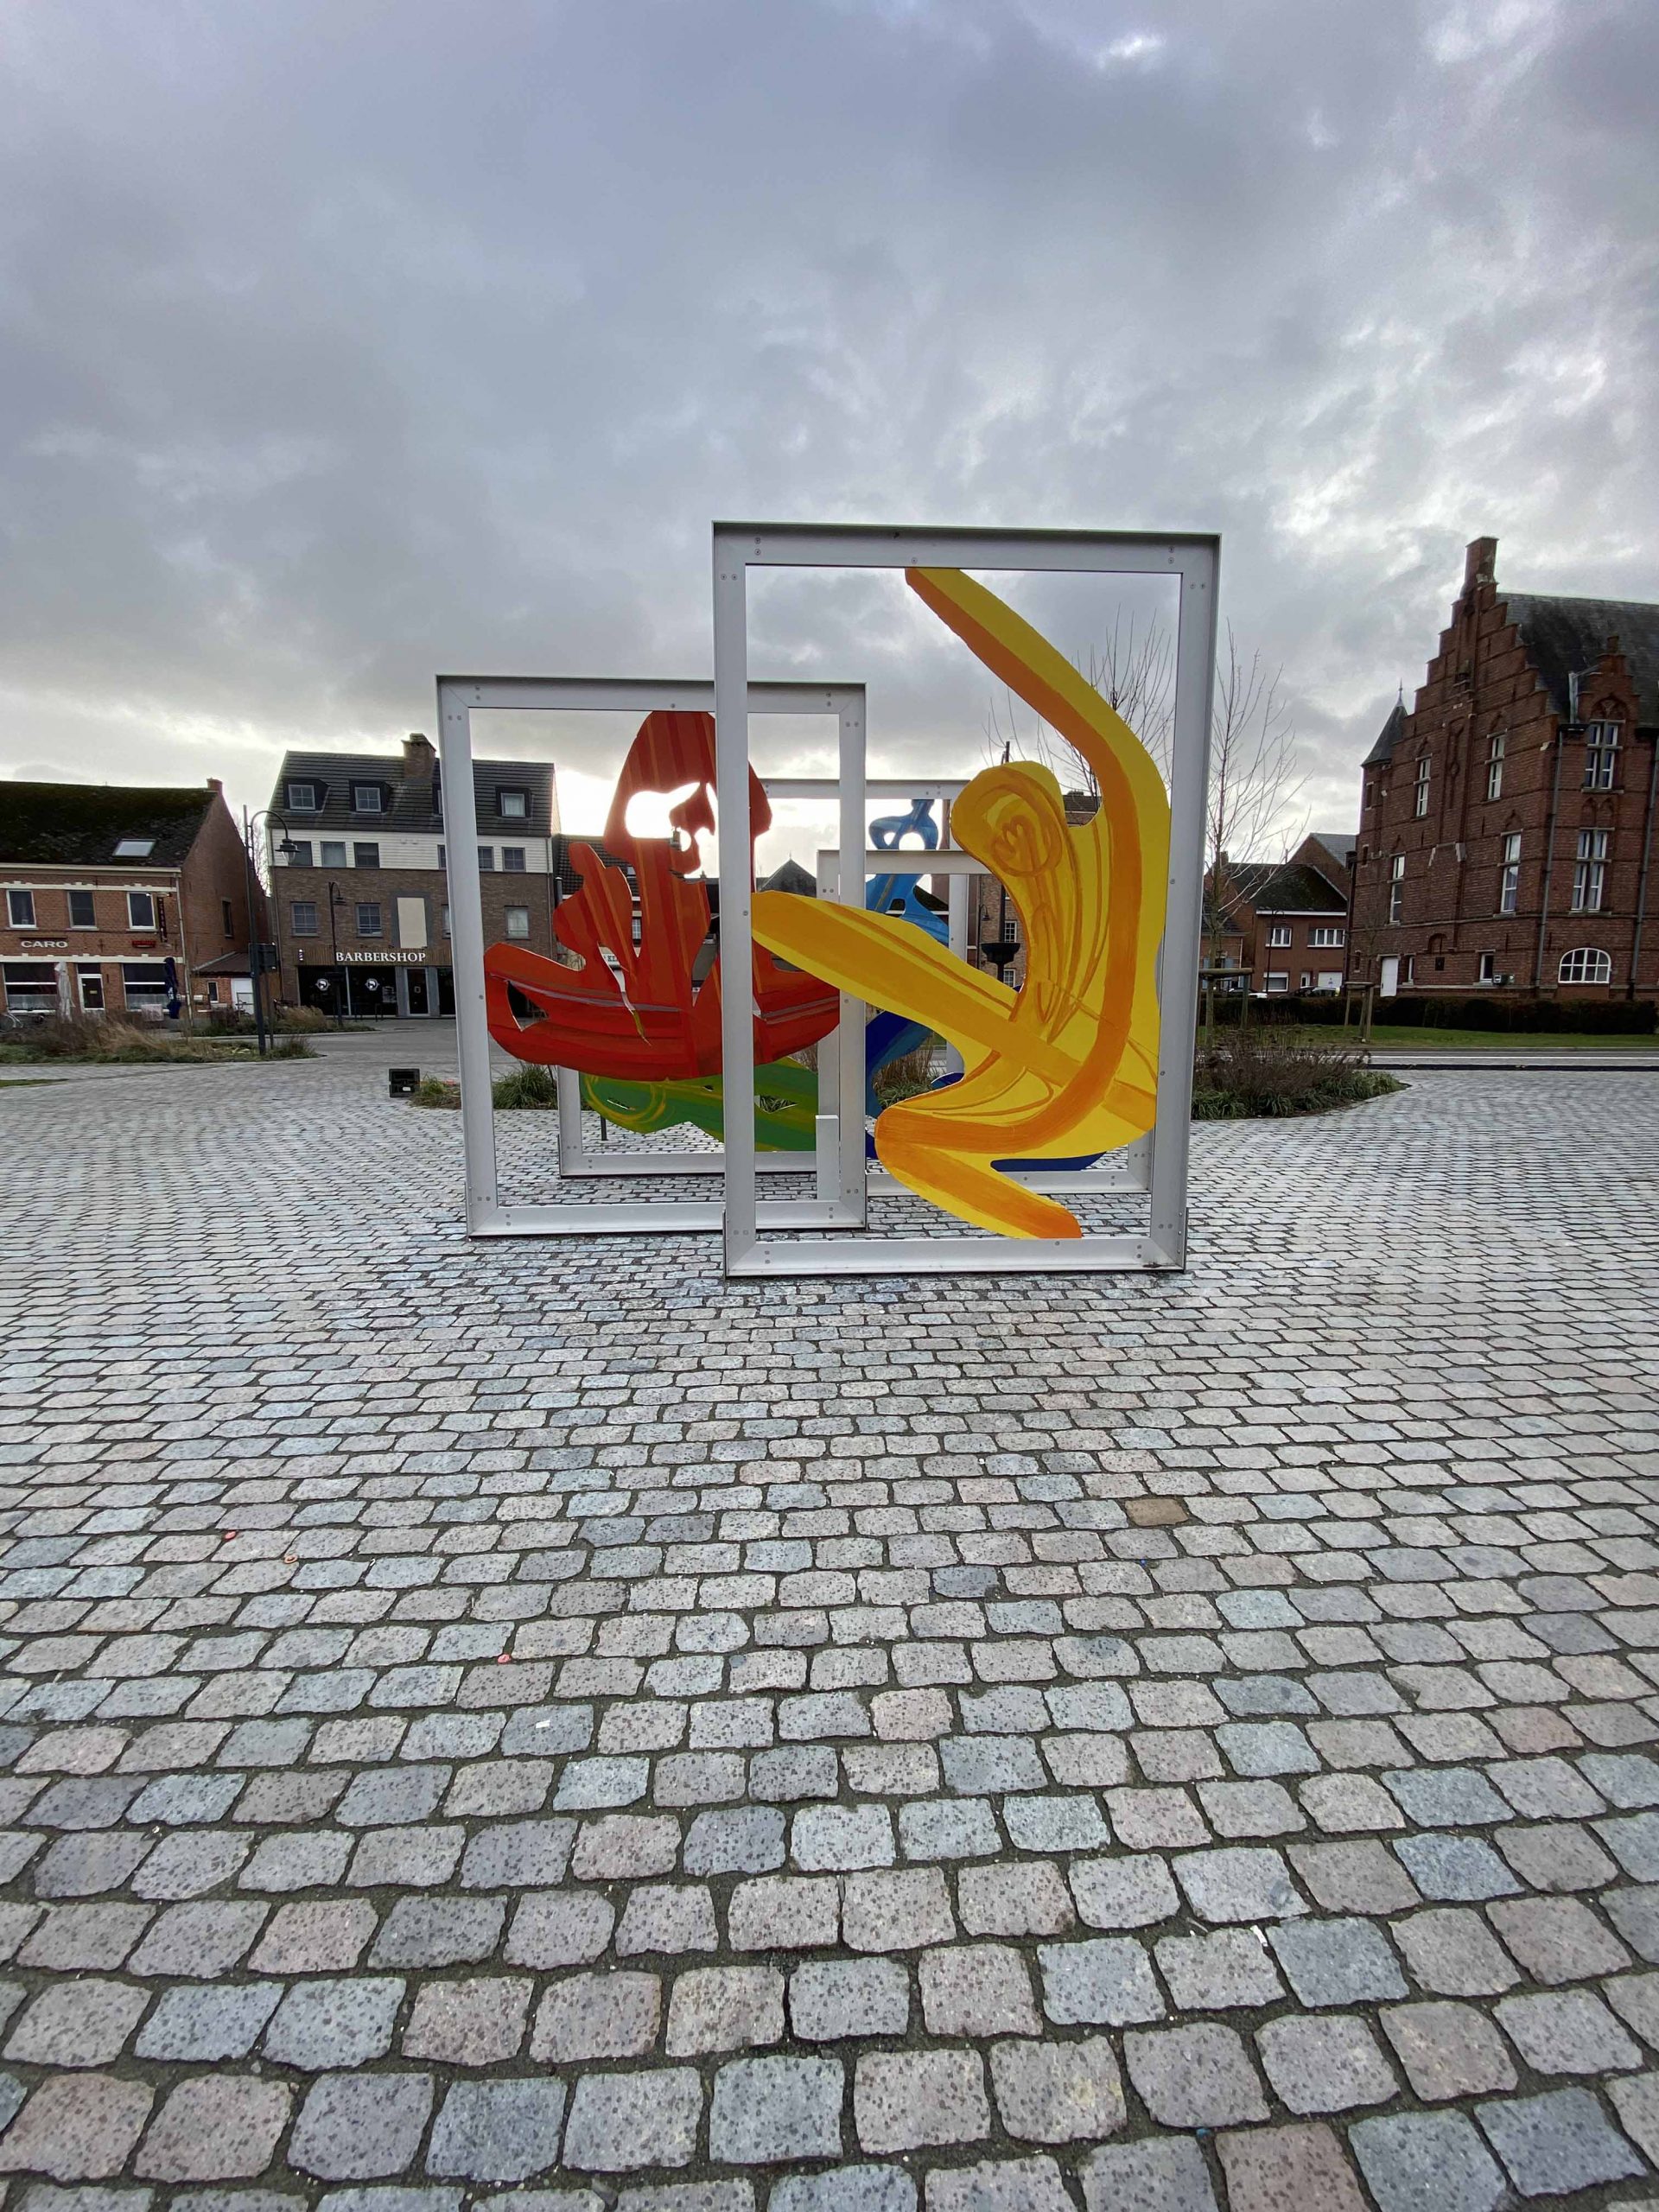 Escultura Plaza de la Municipalidad de Laakdal, provincia de Antwerpen , Bégica (2018).